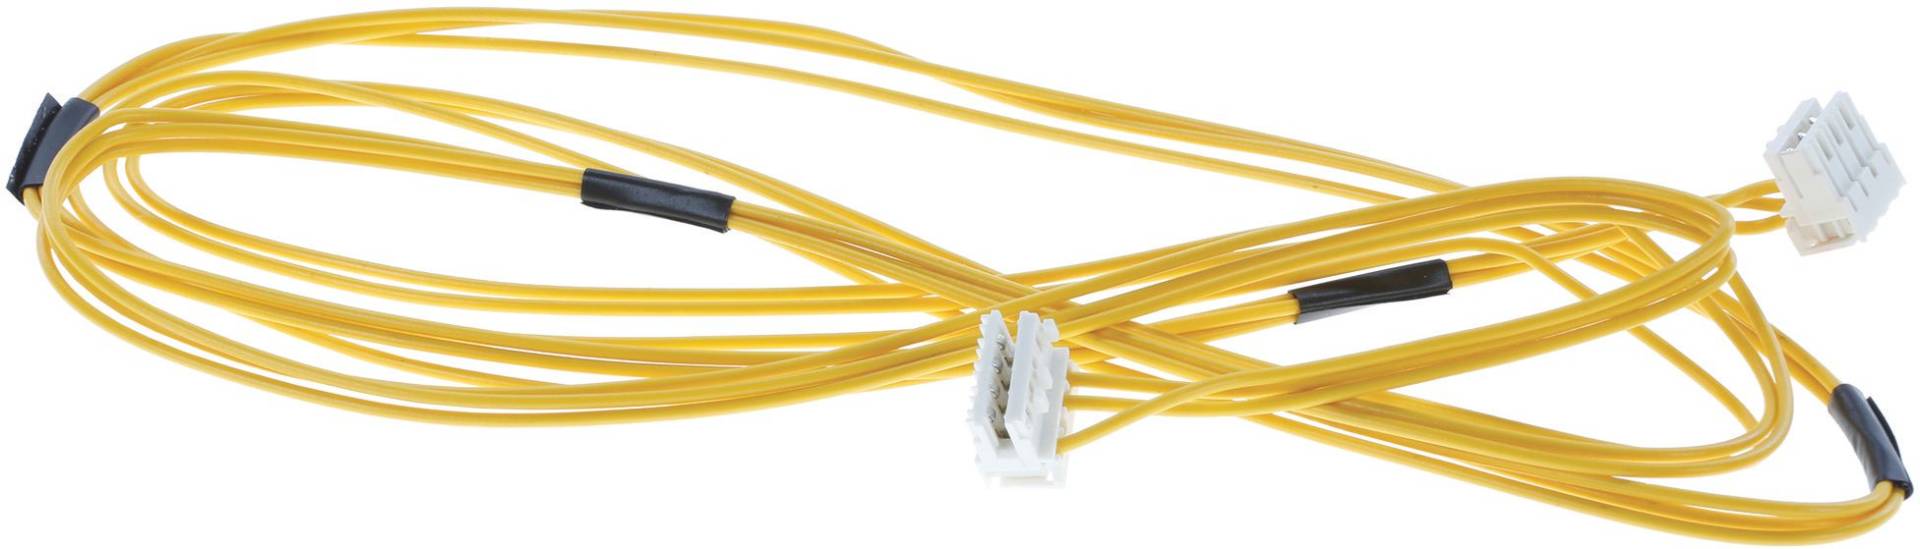 Kabel für Türöffnungsmodul (KD-00633886) von BSH